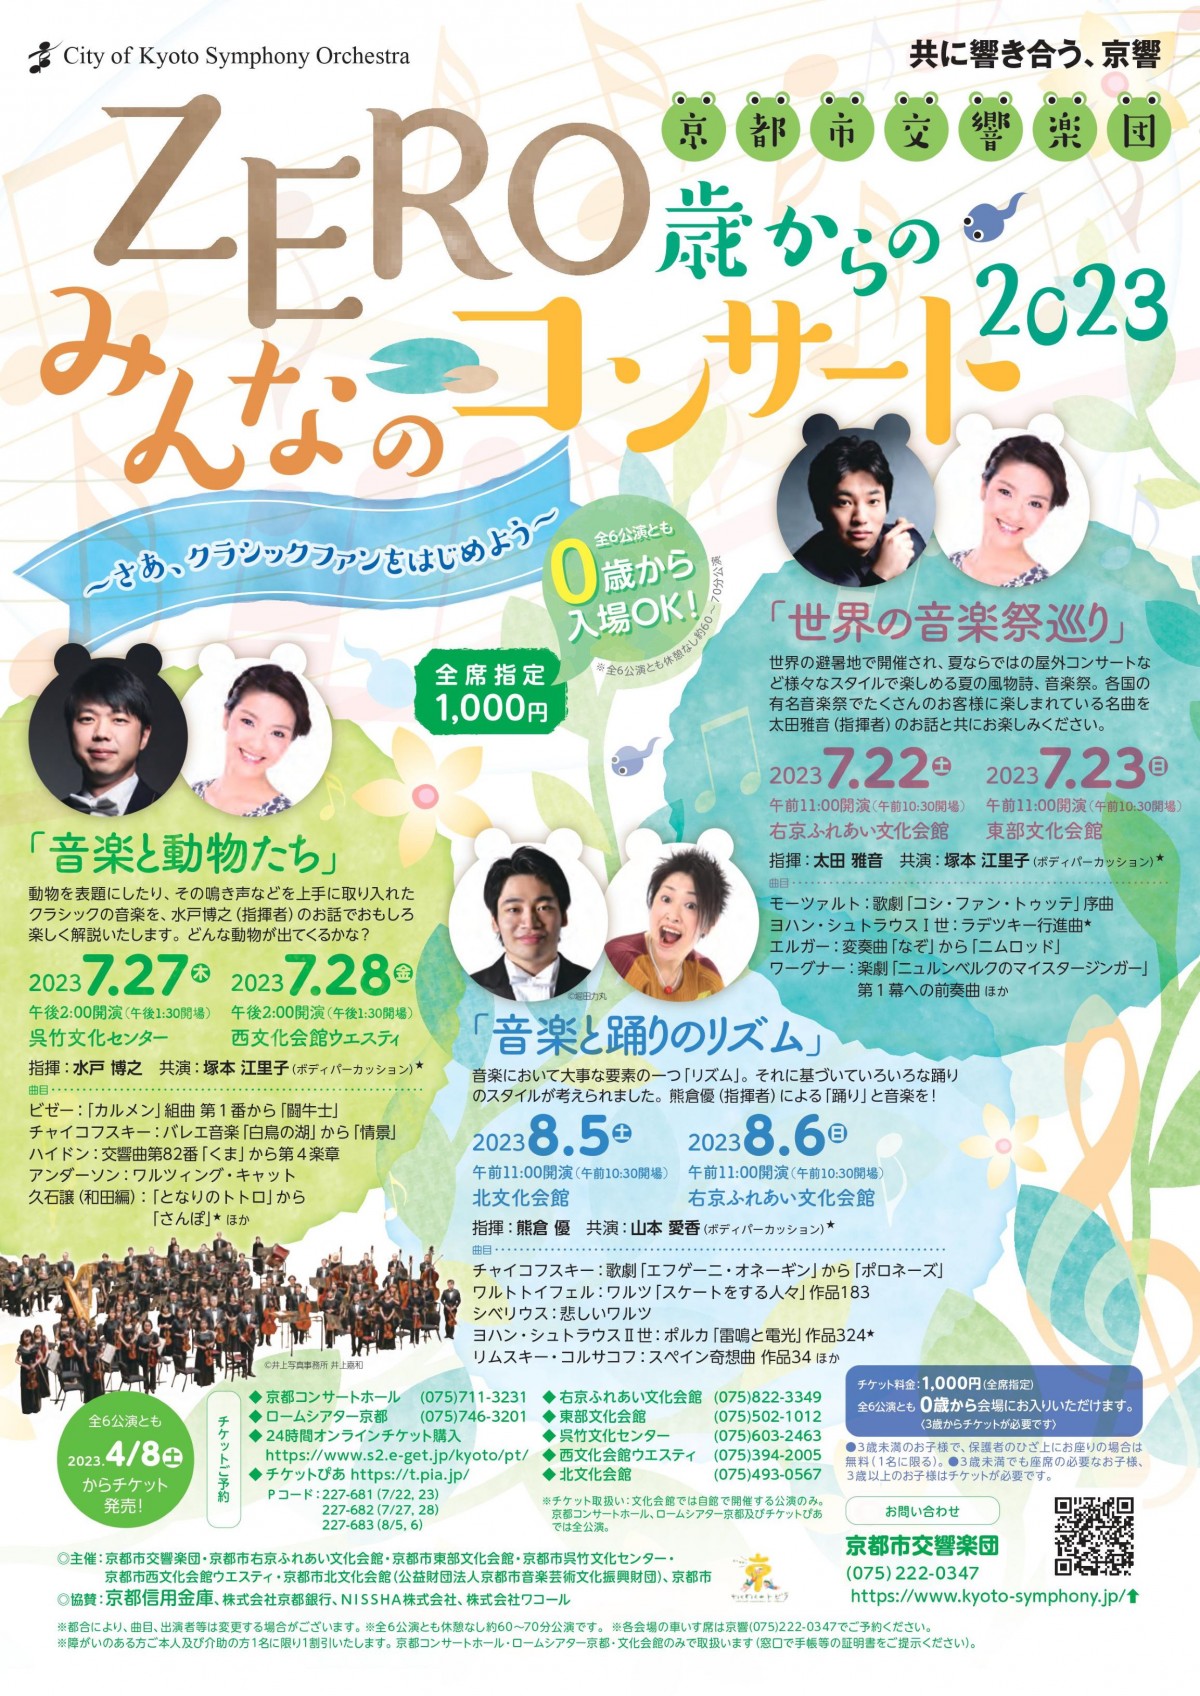 京都市交響楽団ZERO歳からのみんなのコンサート2023 「世界の音楽祭巡り」のフライヤー画像